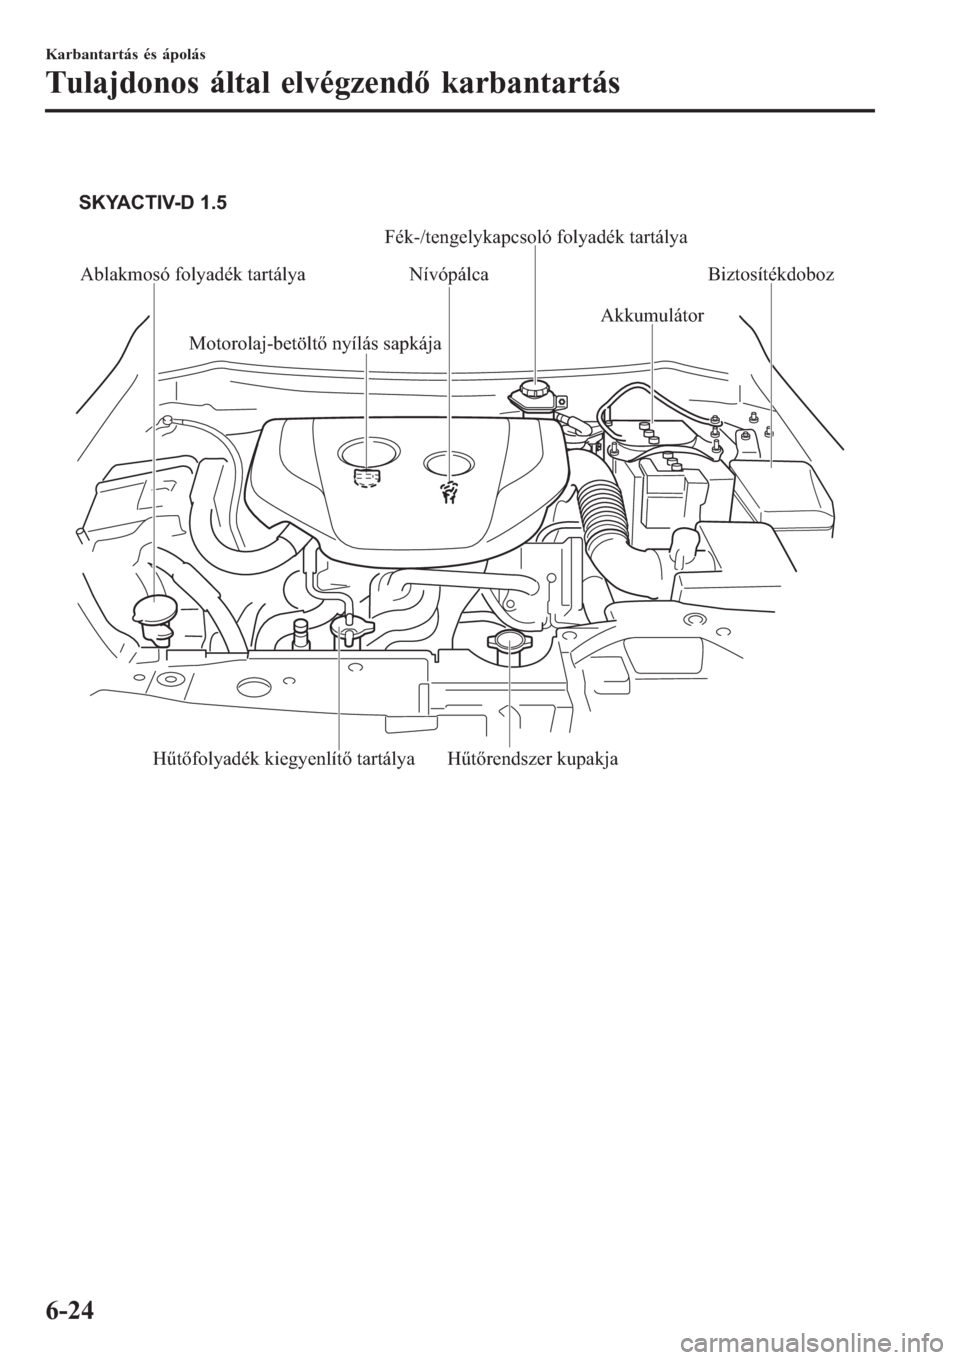 MAZDA MODEL CX-3 2016  Kezelési útmutató (in Hungarian)  
Ablakmosó folyadék tartálya Nívópálca
AkkumulátorBiztosítékdoboz
Hűtőrendszer kupakja
Hűtőfolyadék kiegyenlítő tartálya Motorolaj-betöltő nyílás sapkája SKYACTIV-D 1.5
Fék-/te